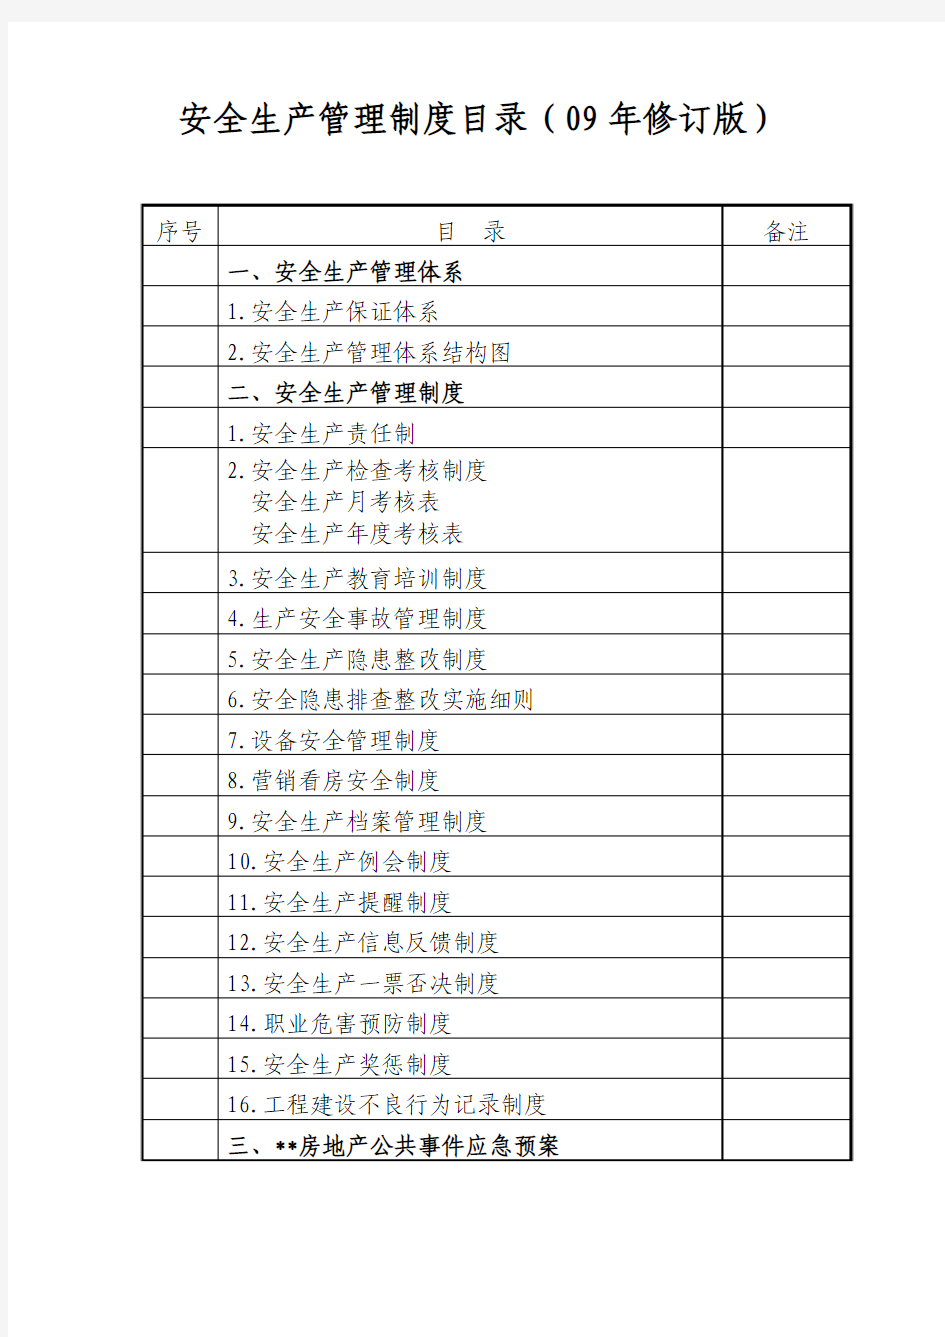 湖南某房产公司安全生产管理制度(09年修订版)